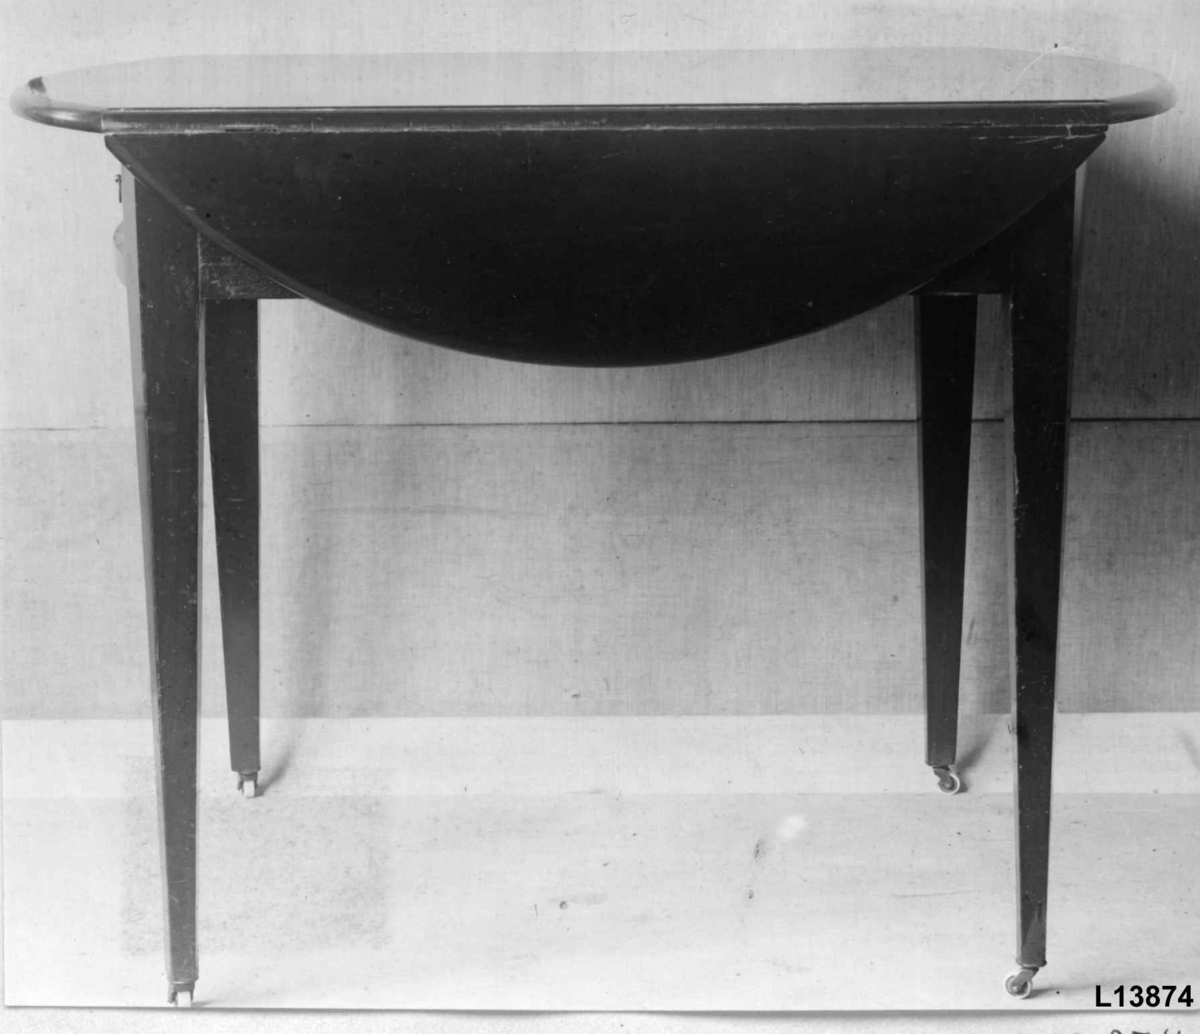 Rektangulært bord med to sideplater som kan slås opp. I oppslått posisjon er bordplaten rund. En skuff under bordplaten. Trinser under ben. 
Lysbåndintarsia langs kanten av sargen på begge kortsider.